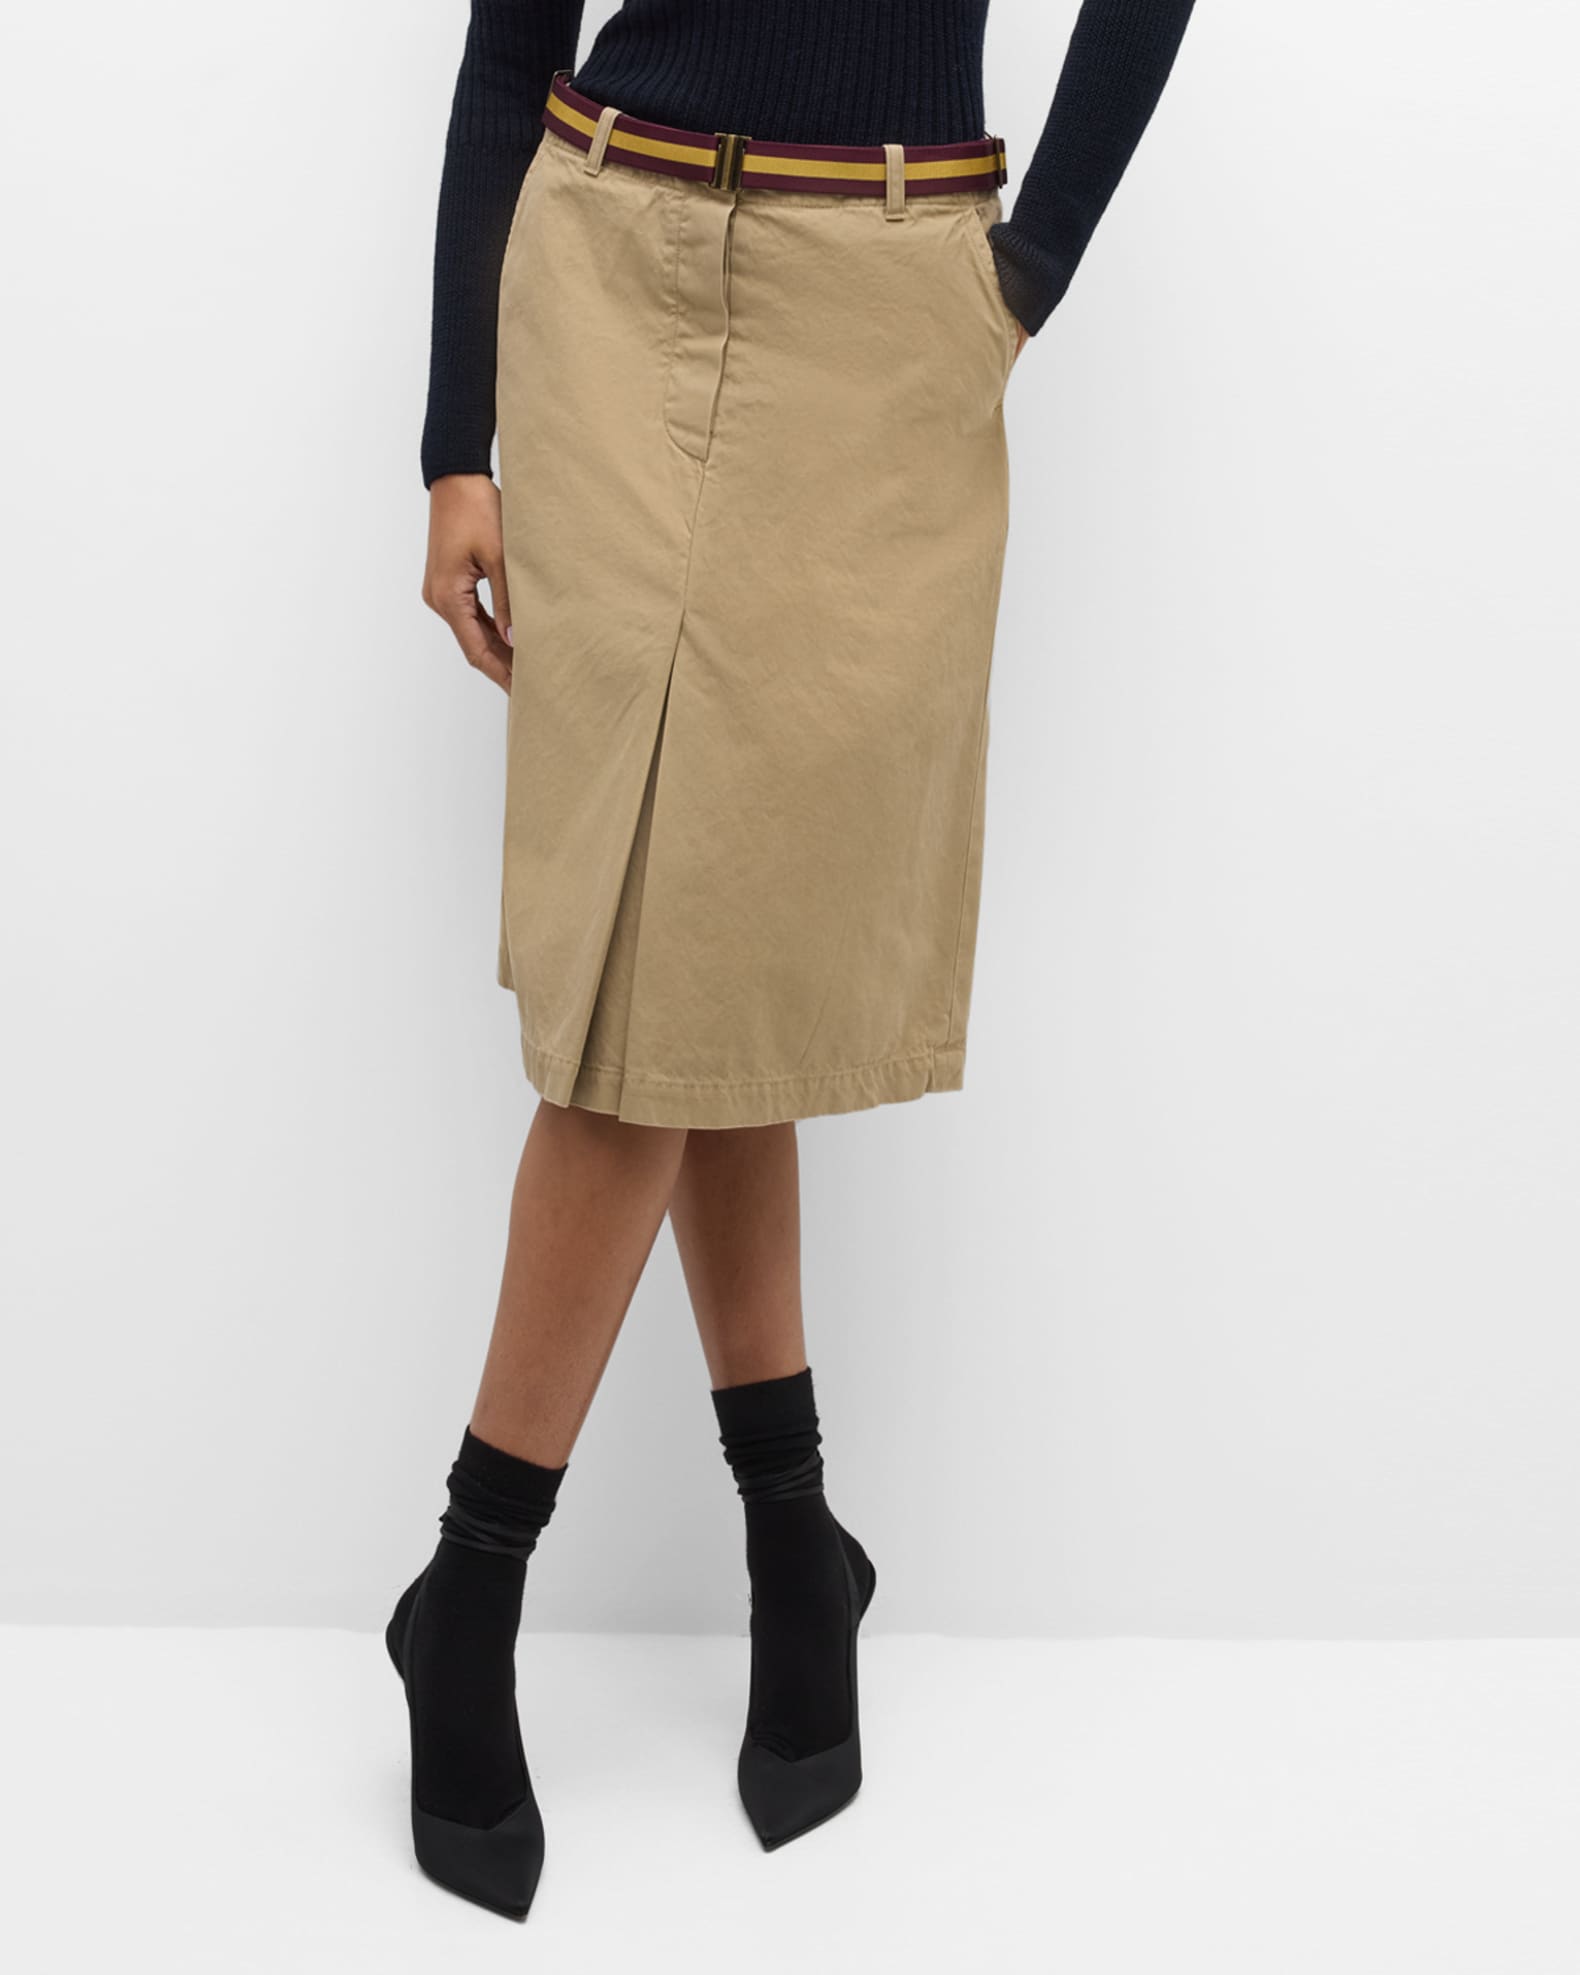 Beige High Waist Pencil Skirt, Shapewear Skirt, Midi Pencil Skirt, Girdle  Skirt, Beige Midi Skirt for Women, Office Skirt Womens -  Canada